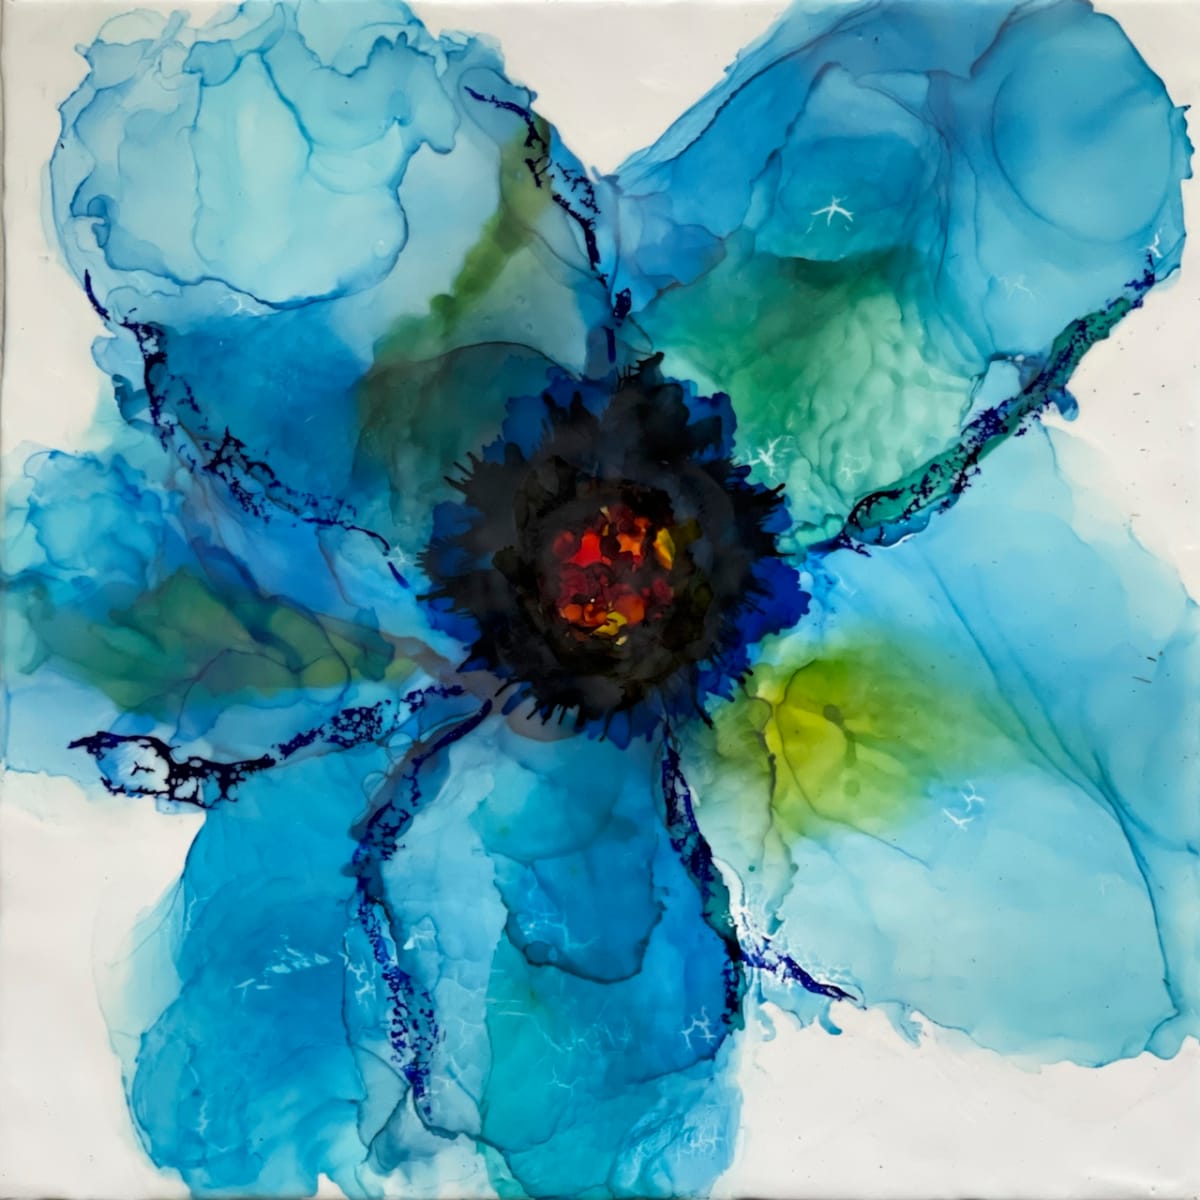 Poppy Blue by Deborah Llewellyn  Image: 18"x18" - mixed media & encaustic on wood panel